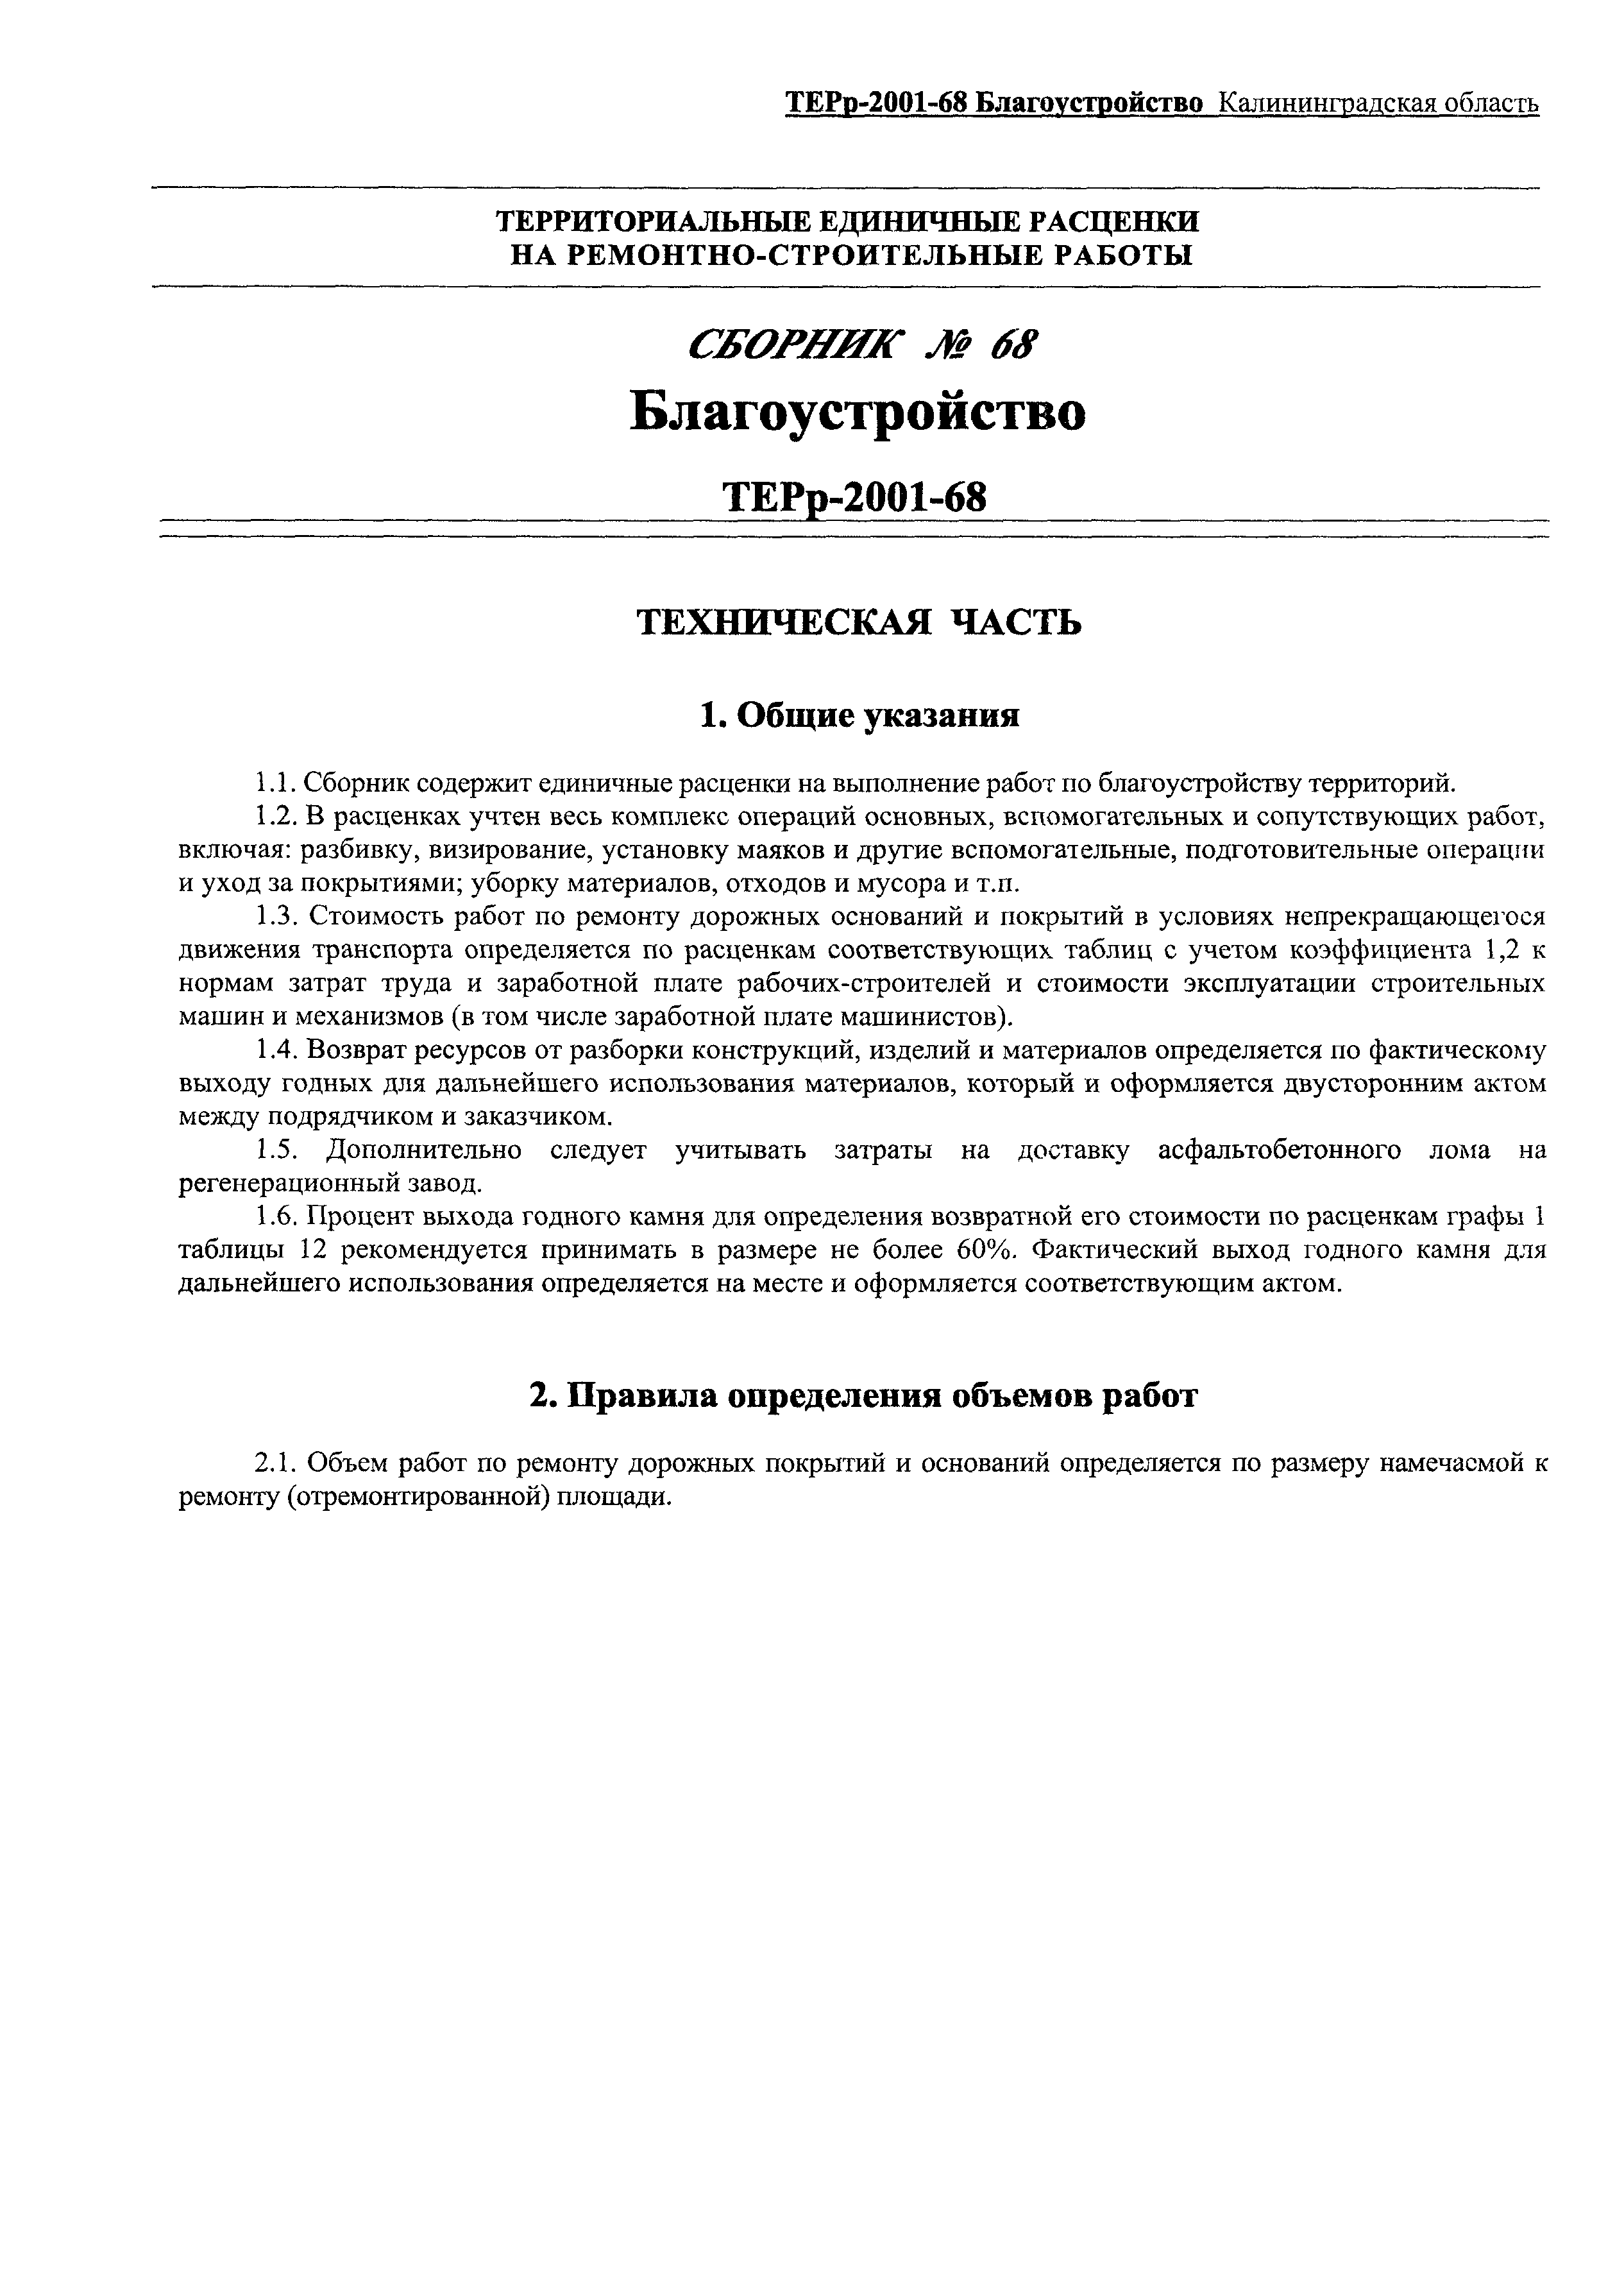 ТЕРр Калининградской области 2001-68